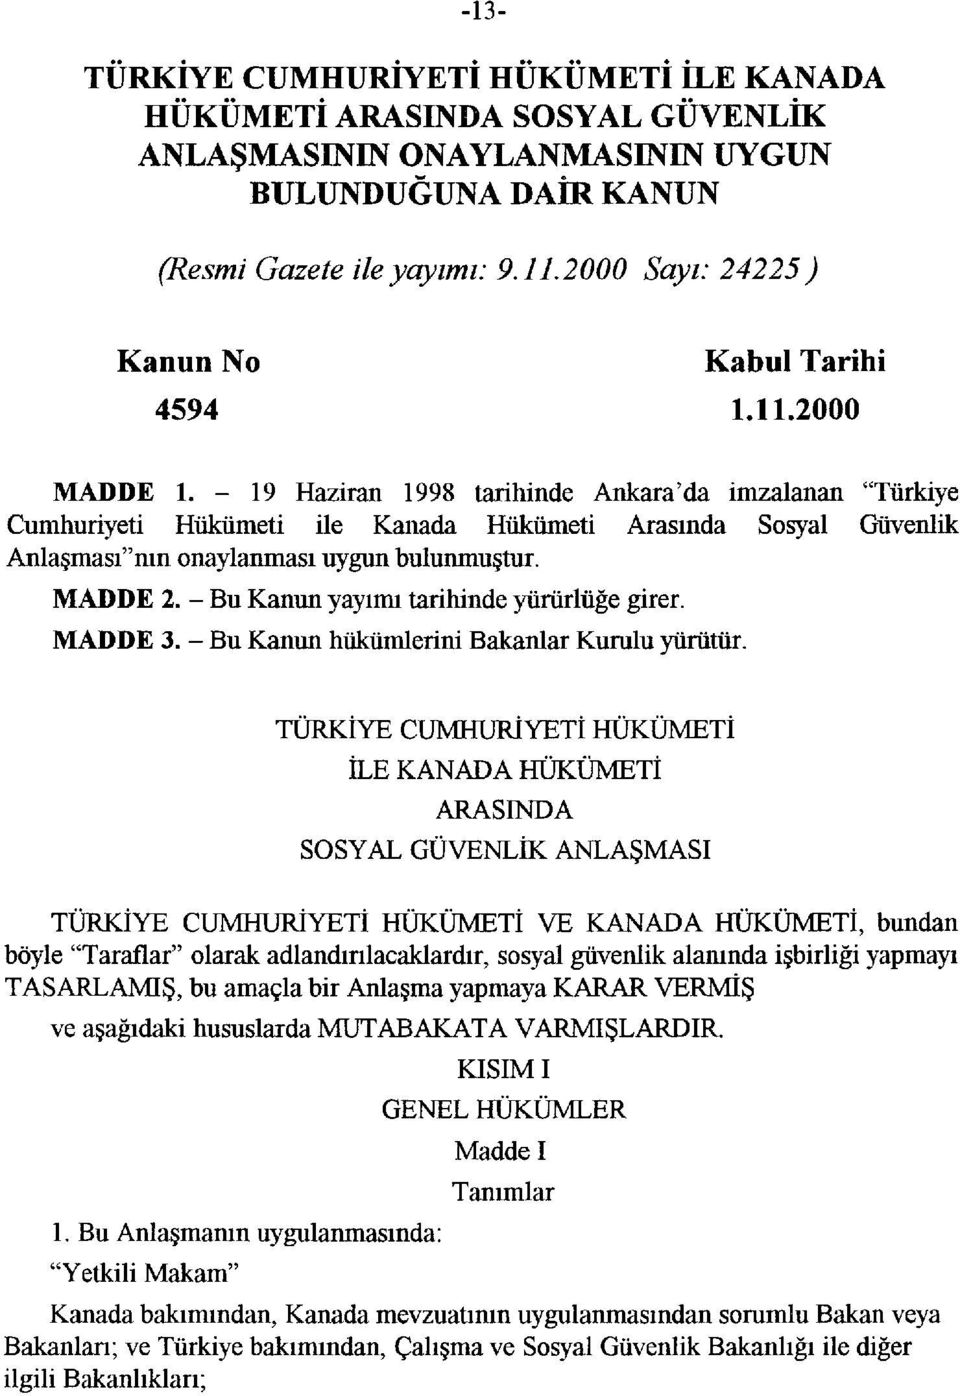 -19 Haziran 1998 tarihinde Ankara'da imzalanan "Türkiye Cumhuriyeti Hükümeti ile Kanada Hükümeti Arasında Sosyal Güvenlik Anlaşması"nın onaylanması uygun bulunmuştur. MADDE 2.